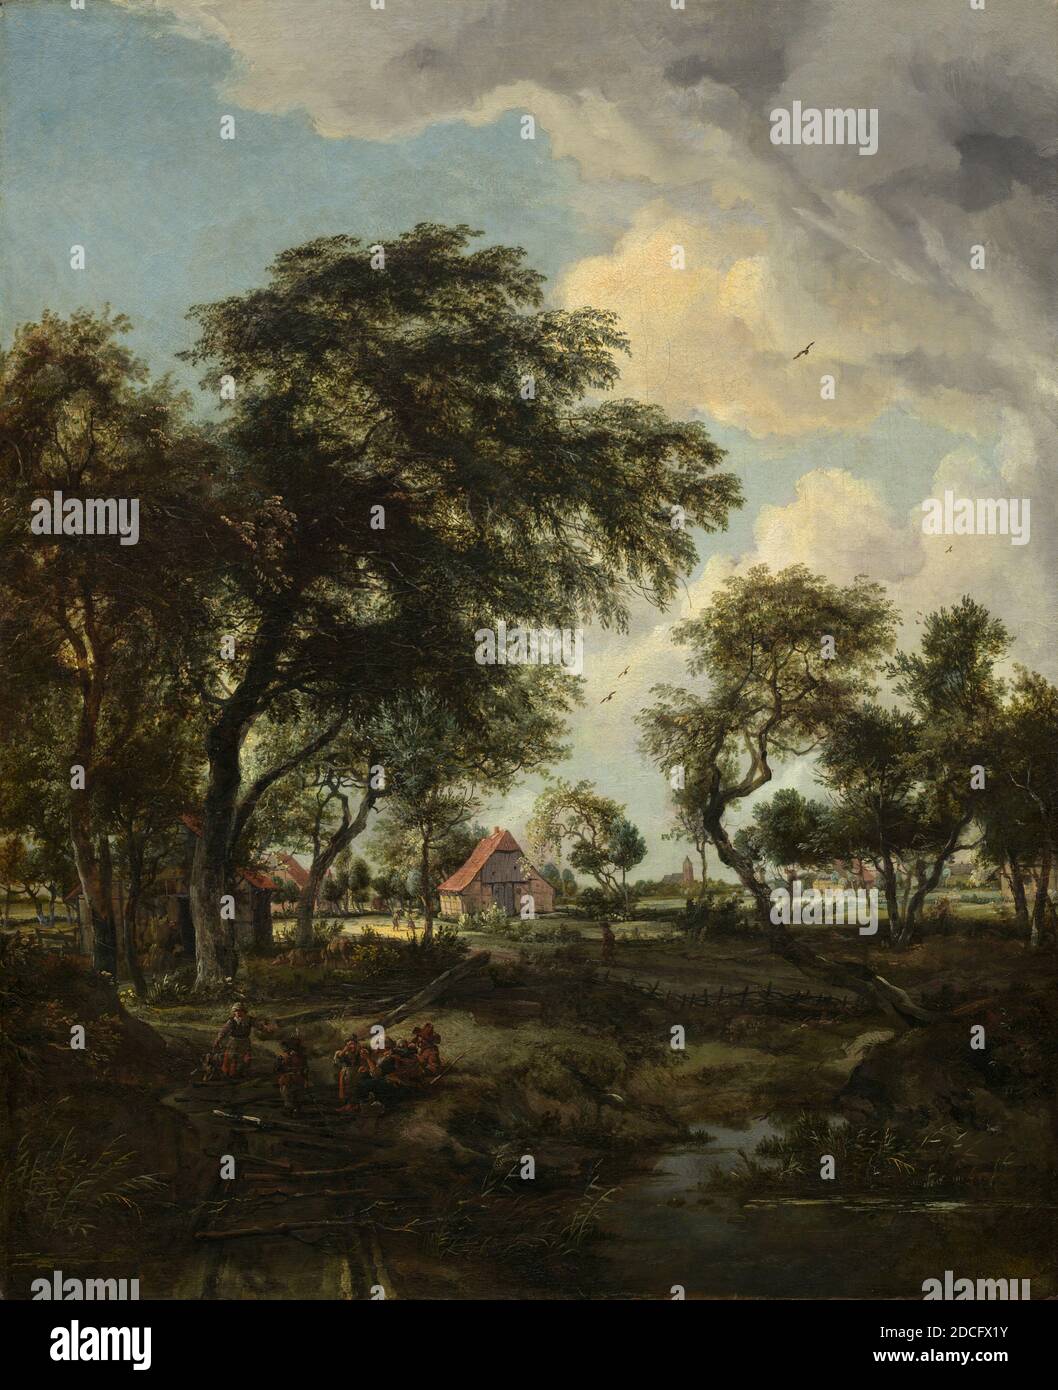 Meindert Hobbema, (Künstler), Niederländisch, 1638 - 1709, A Farm in the Sunlight, 1668, Öl auf Leinwand, gesamt: 81.9 x 66.4 cm (32 1/4 x 26 1/8 in.), studierte Meindert Hobbema bei dem bekannten Landschaftskünstler Jacob van Ruisdael, und etliche seiner Kompositionen entstanden aus dem Werk seines ersten Meisters. Hobbema näherte sich der Natur in einer geradlinigen Art und Weise, Darstellung malerischer, ländlicher Landschaft durch die Anwesenheit von Bauern oder Jäger belebt. Oft verwendete er Lieblingsmotive wie alte Wassermühlen, strohgedeckte Hütten und einbalsamische Deiche und ordnete sie in neue Kompositionen um Stockfoto